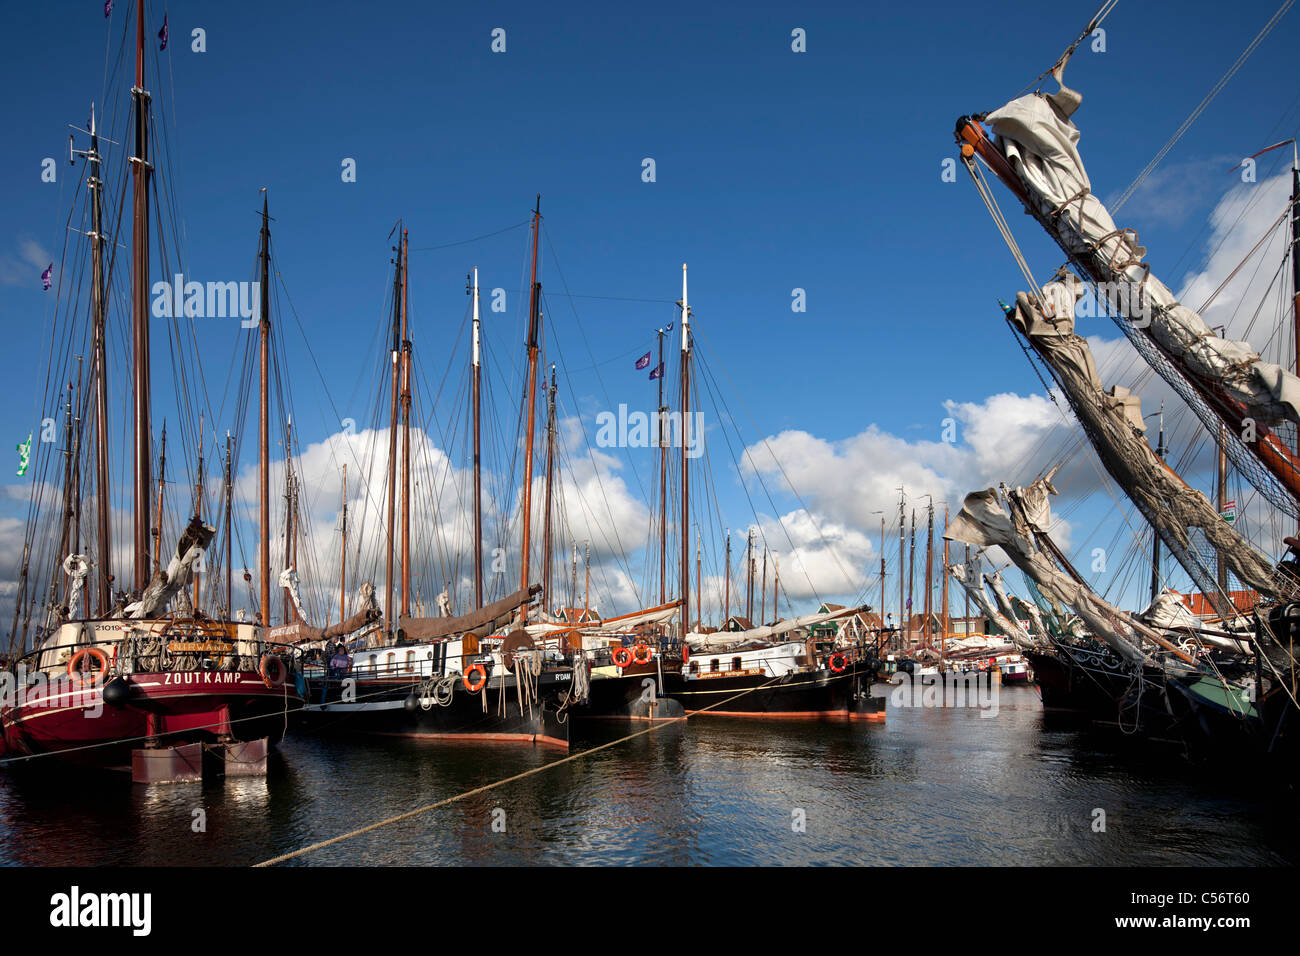 Les Pays-Bas, Volendam, voiliers traditionnels dans le port. Banque D'Images